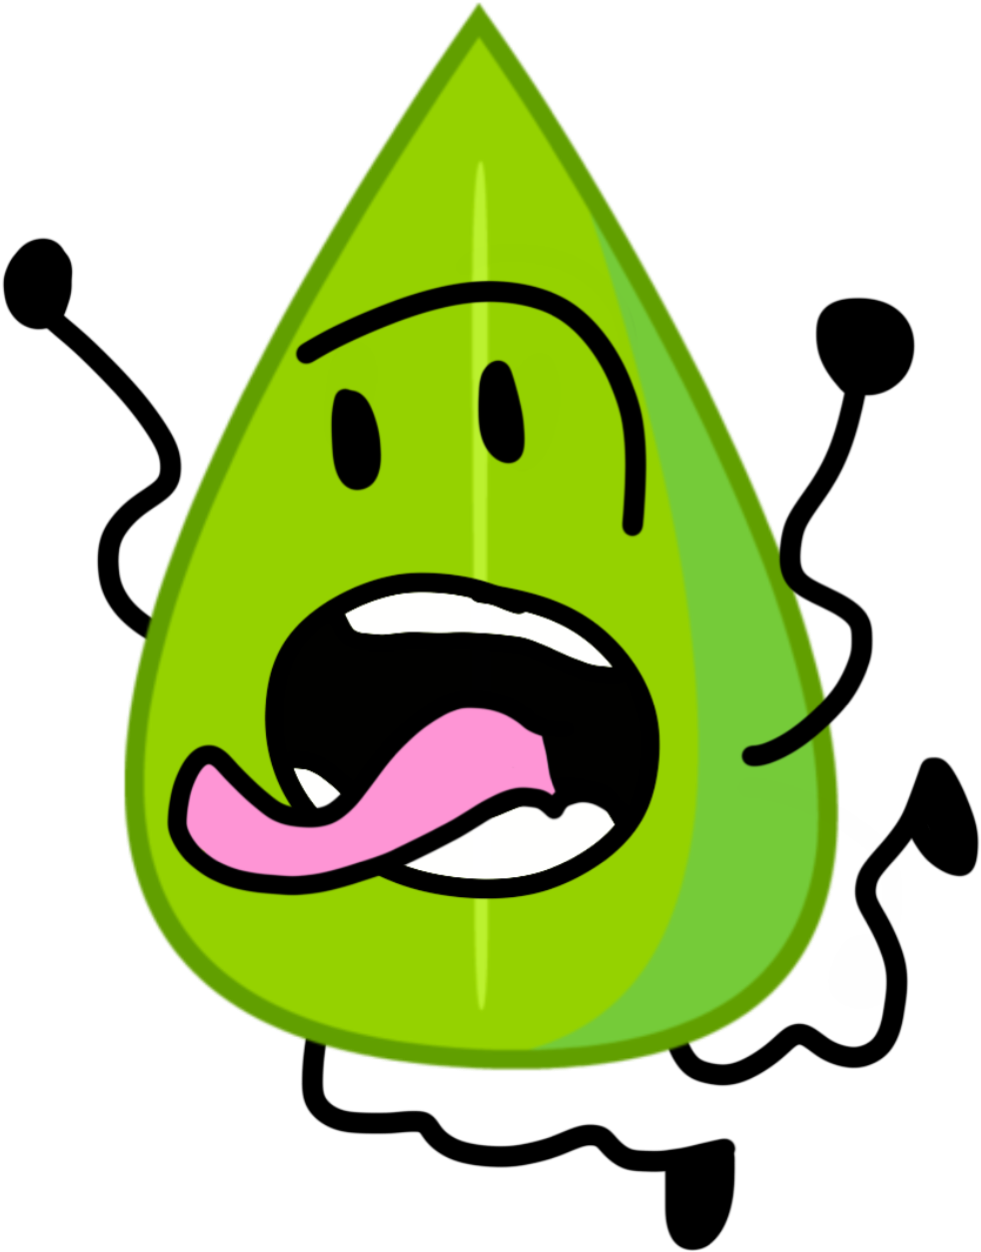 Green Cartoon Character Tongue Out PNG